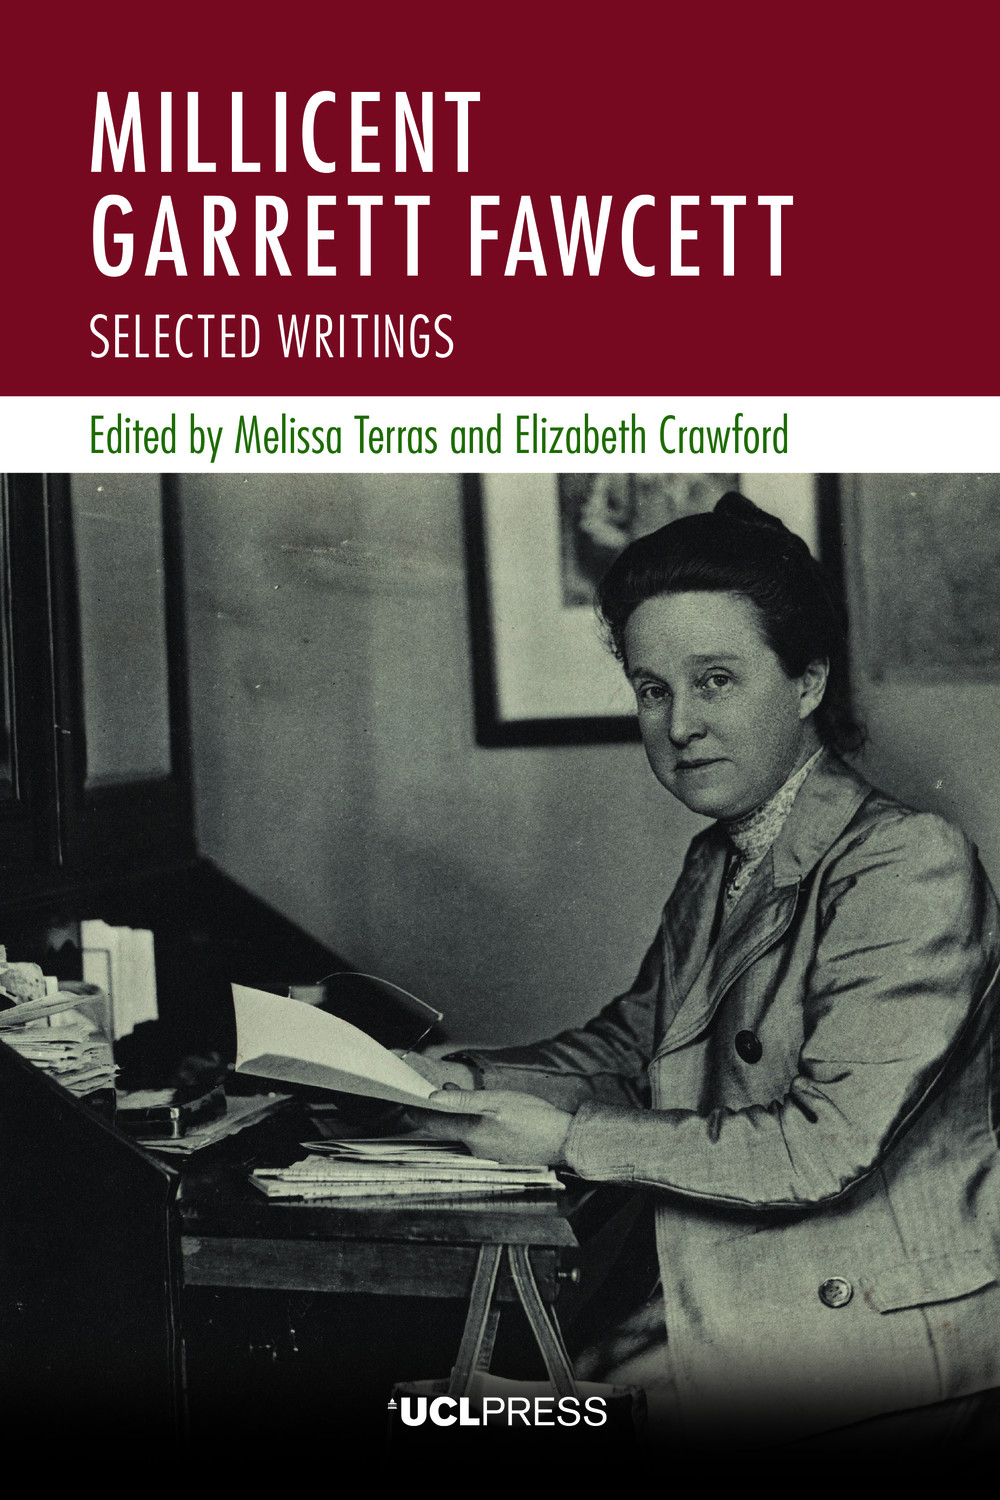 fawcett-book-cover-2